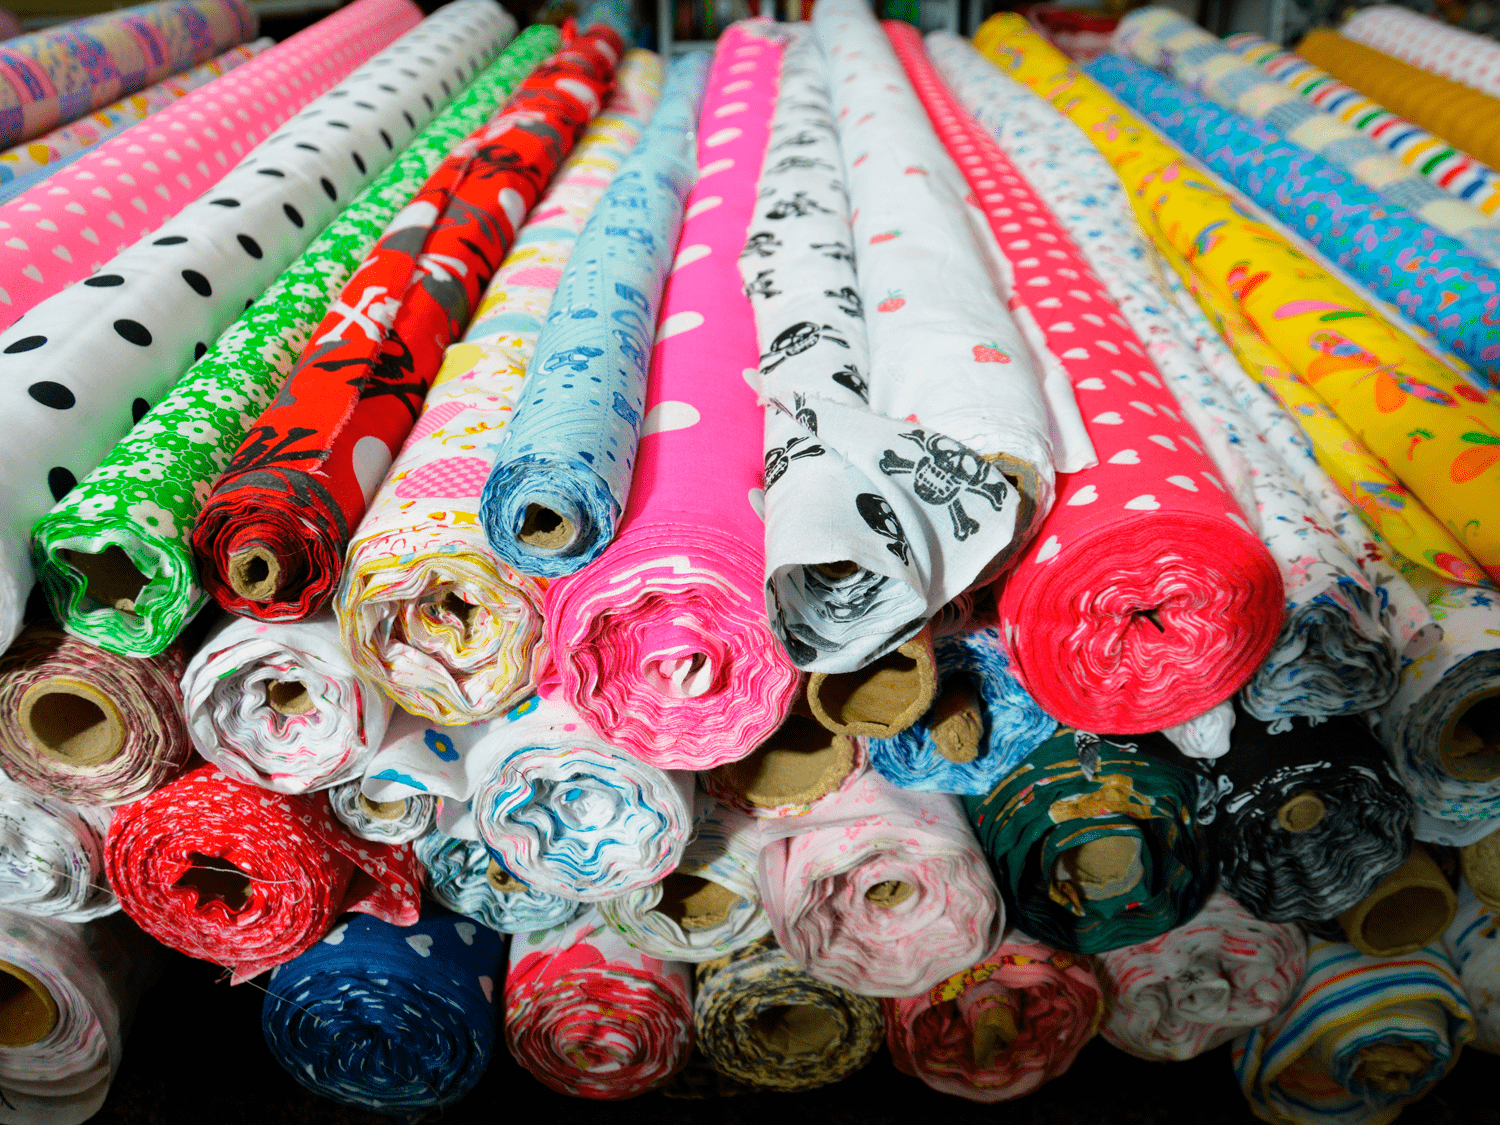 Текстильные изделия